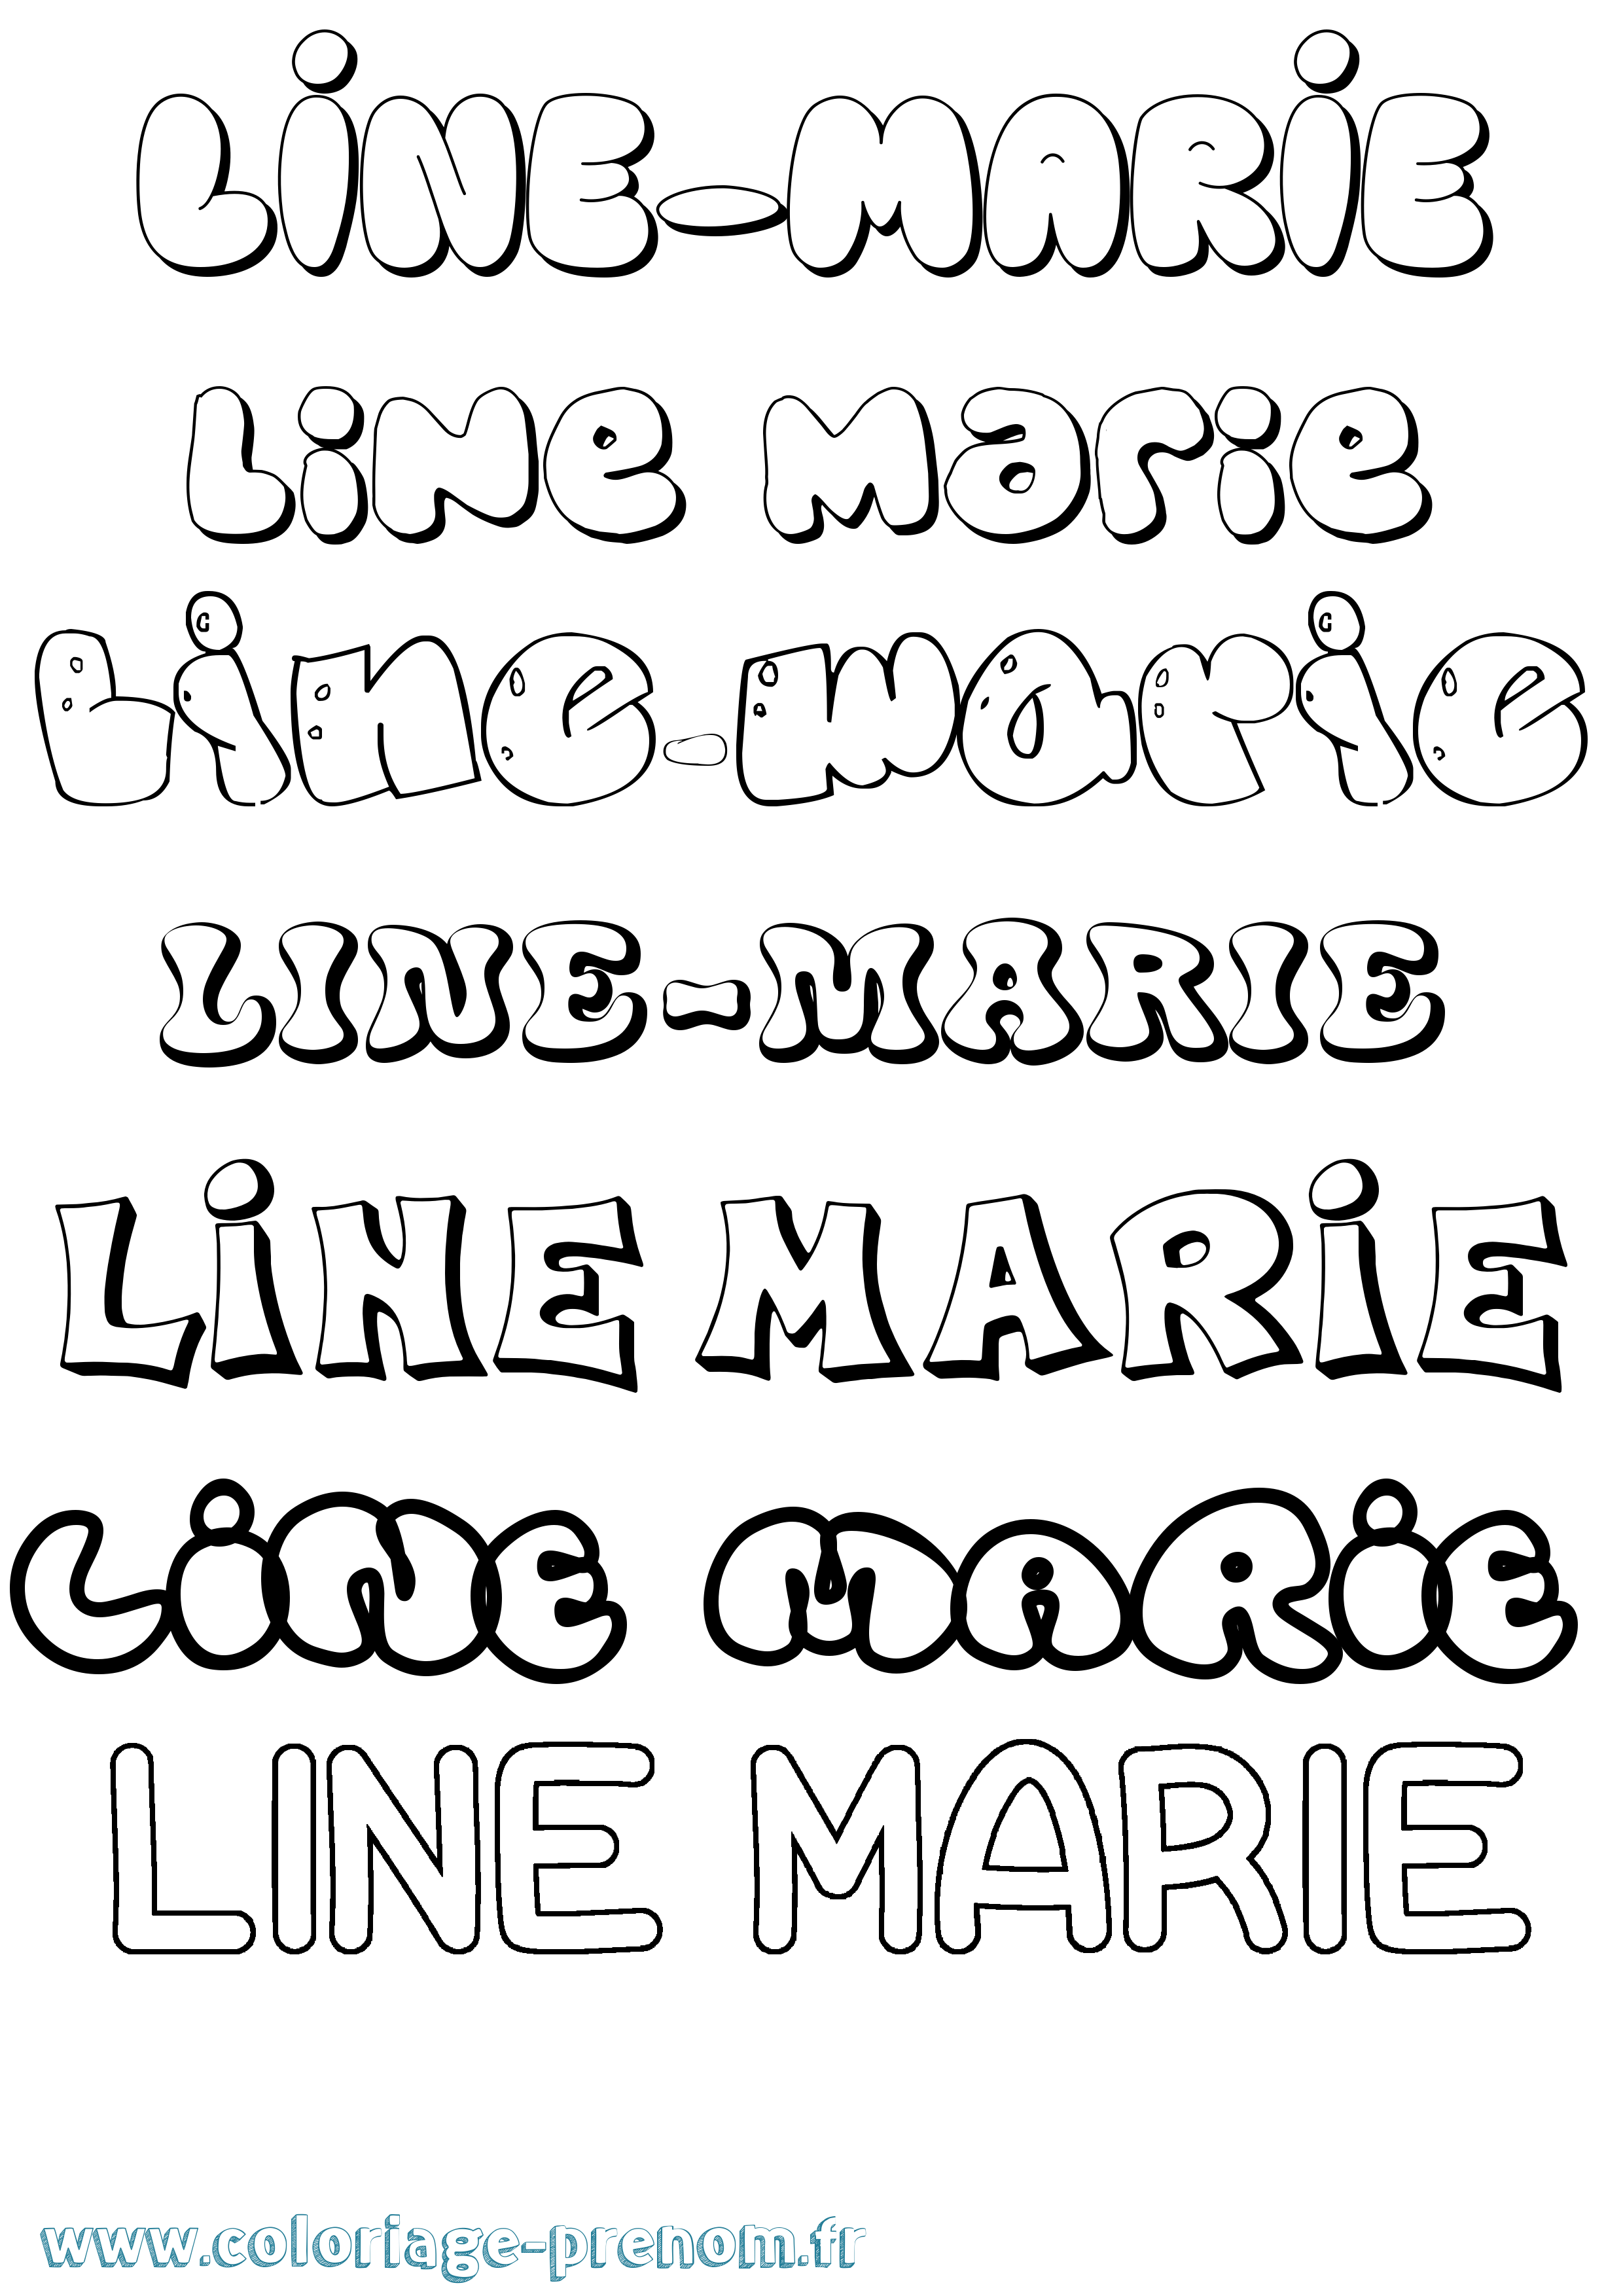 Coloriage prénom Line-Marie Bubble